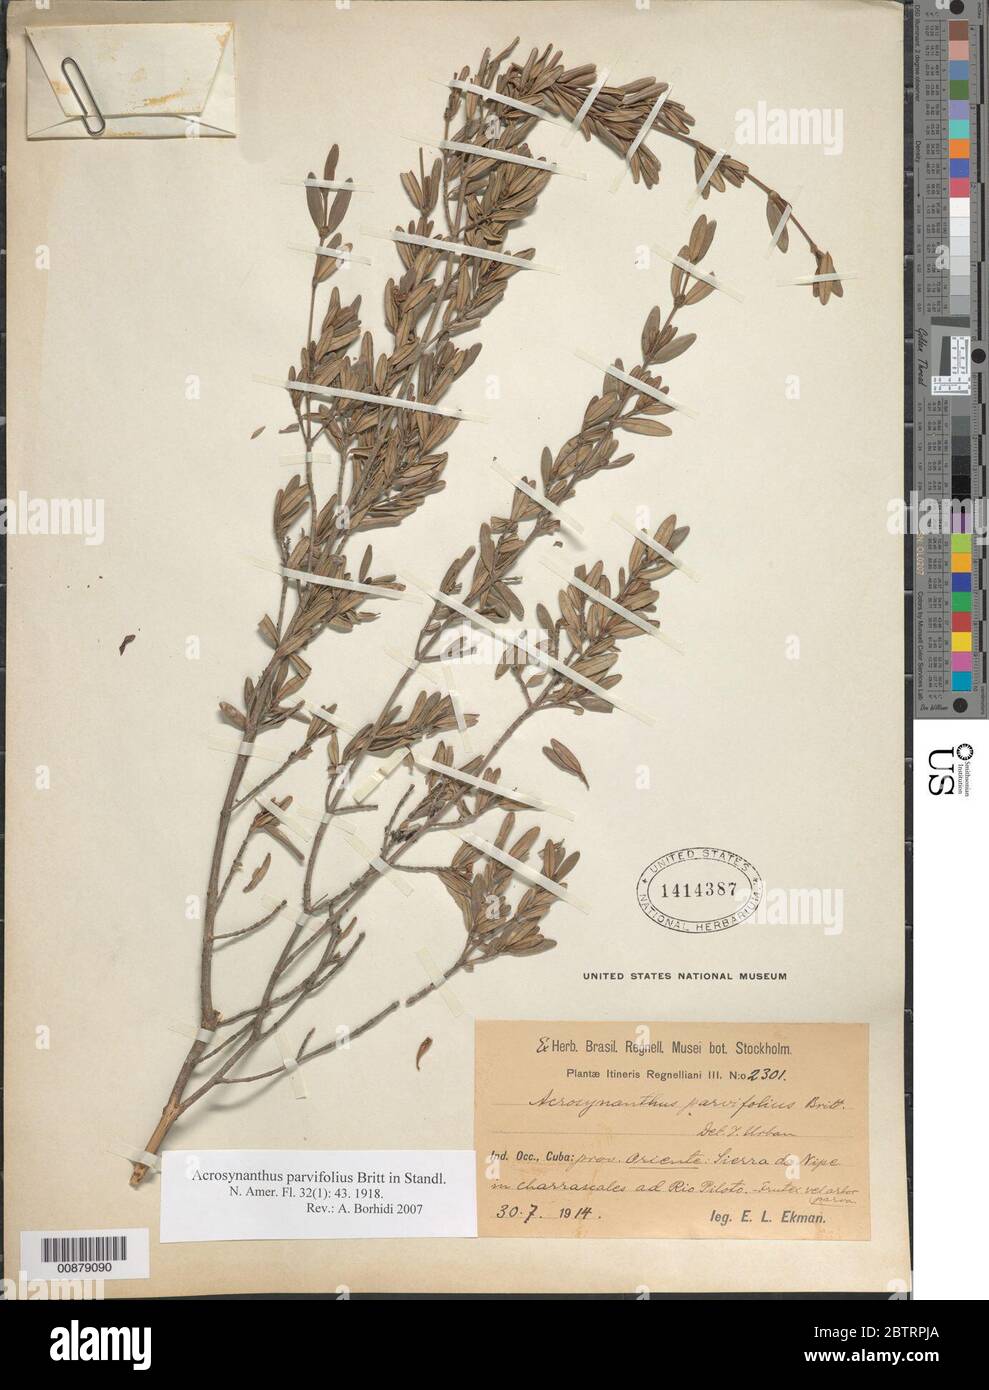 Acrosynanthus parvifolius Britton. Stock Photo